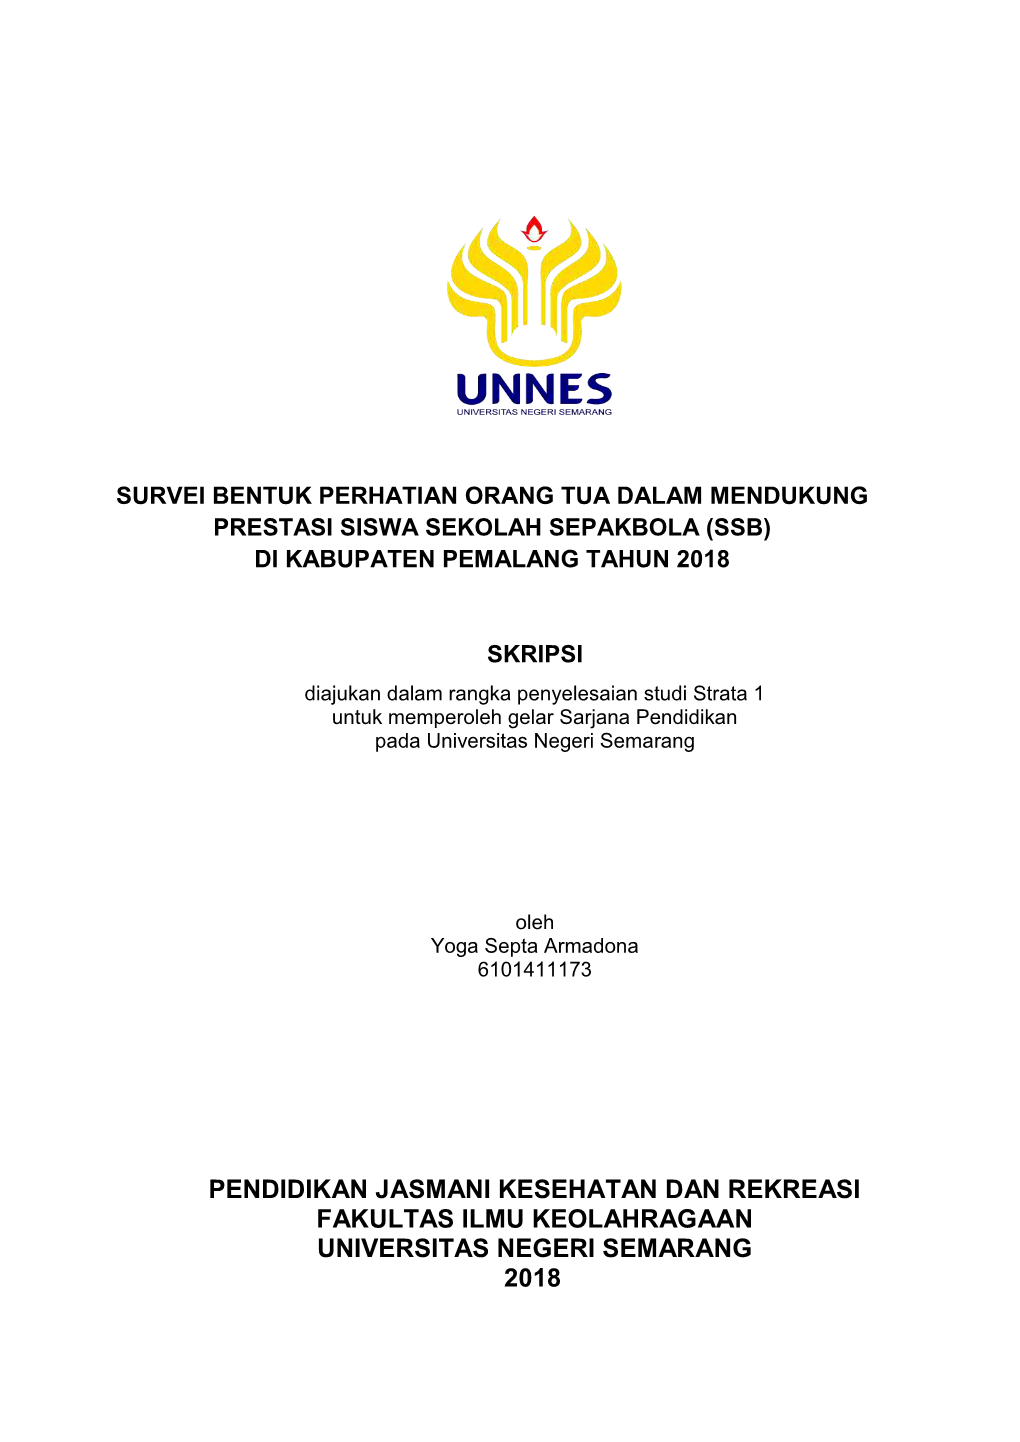 Pendidikan Jasmani Kesehatan Dan Rekreasi Fakultas Ilmu Keolahragaan Universitas Negeri Semarang 2018